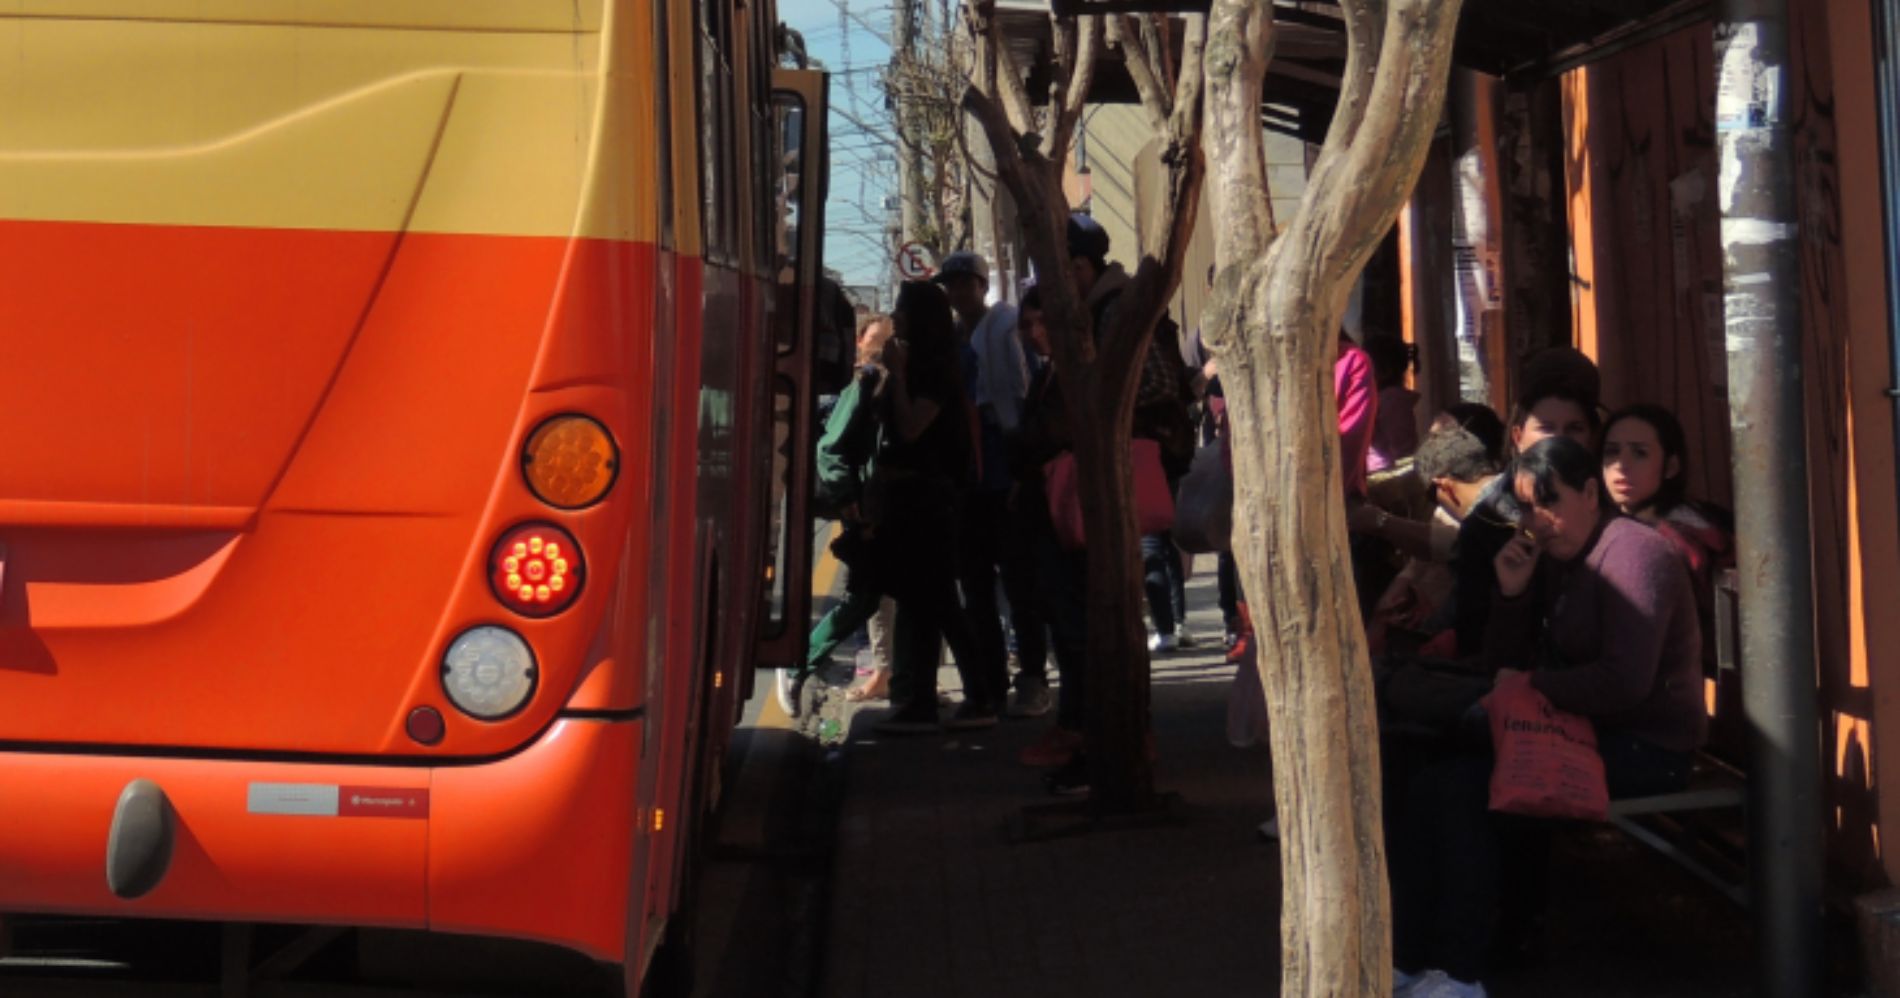 Nova rota de transporte público em São José dos Pinhais será inaugurada na segunda-feira (06)